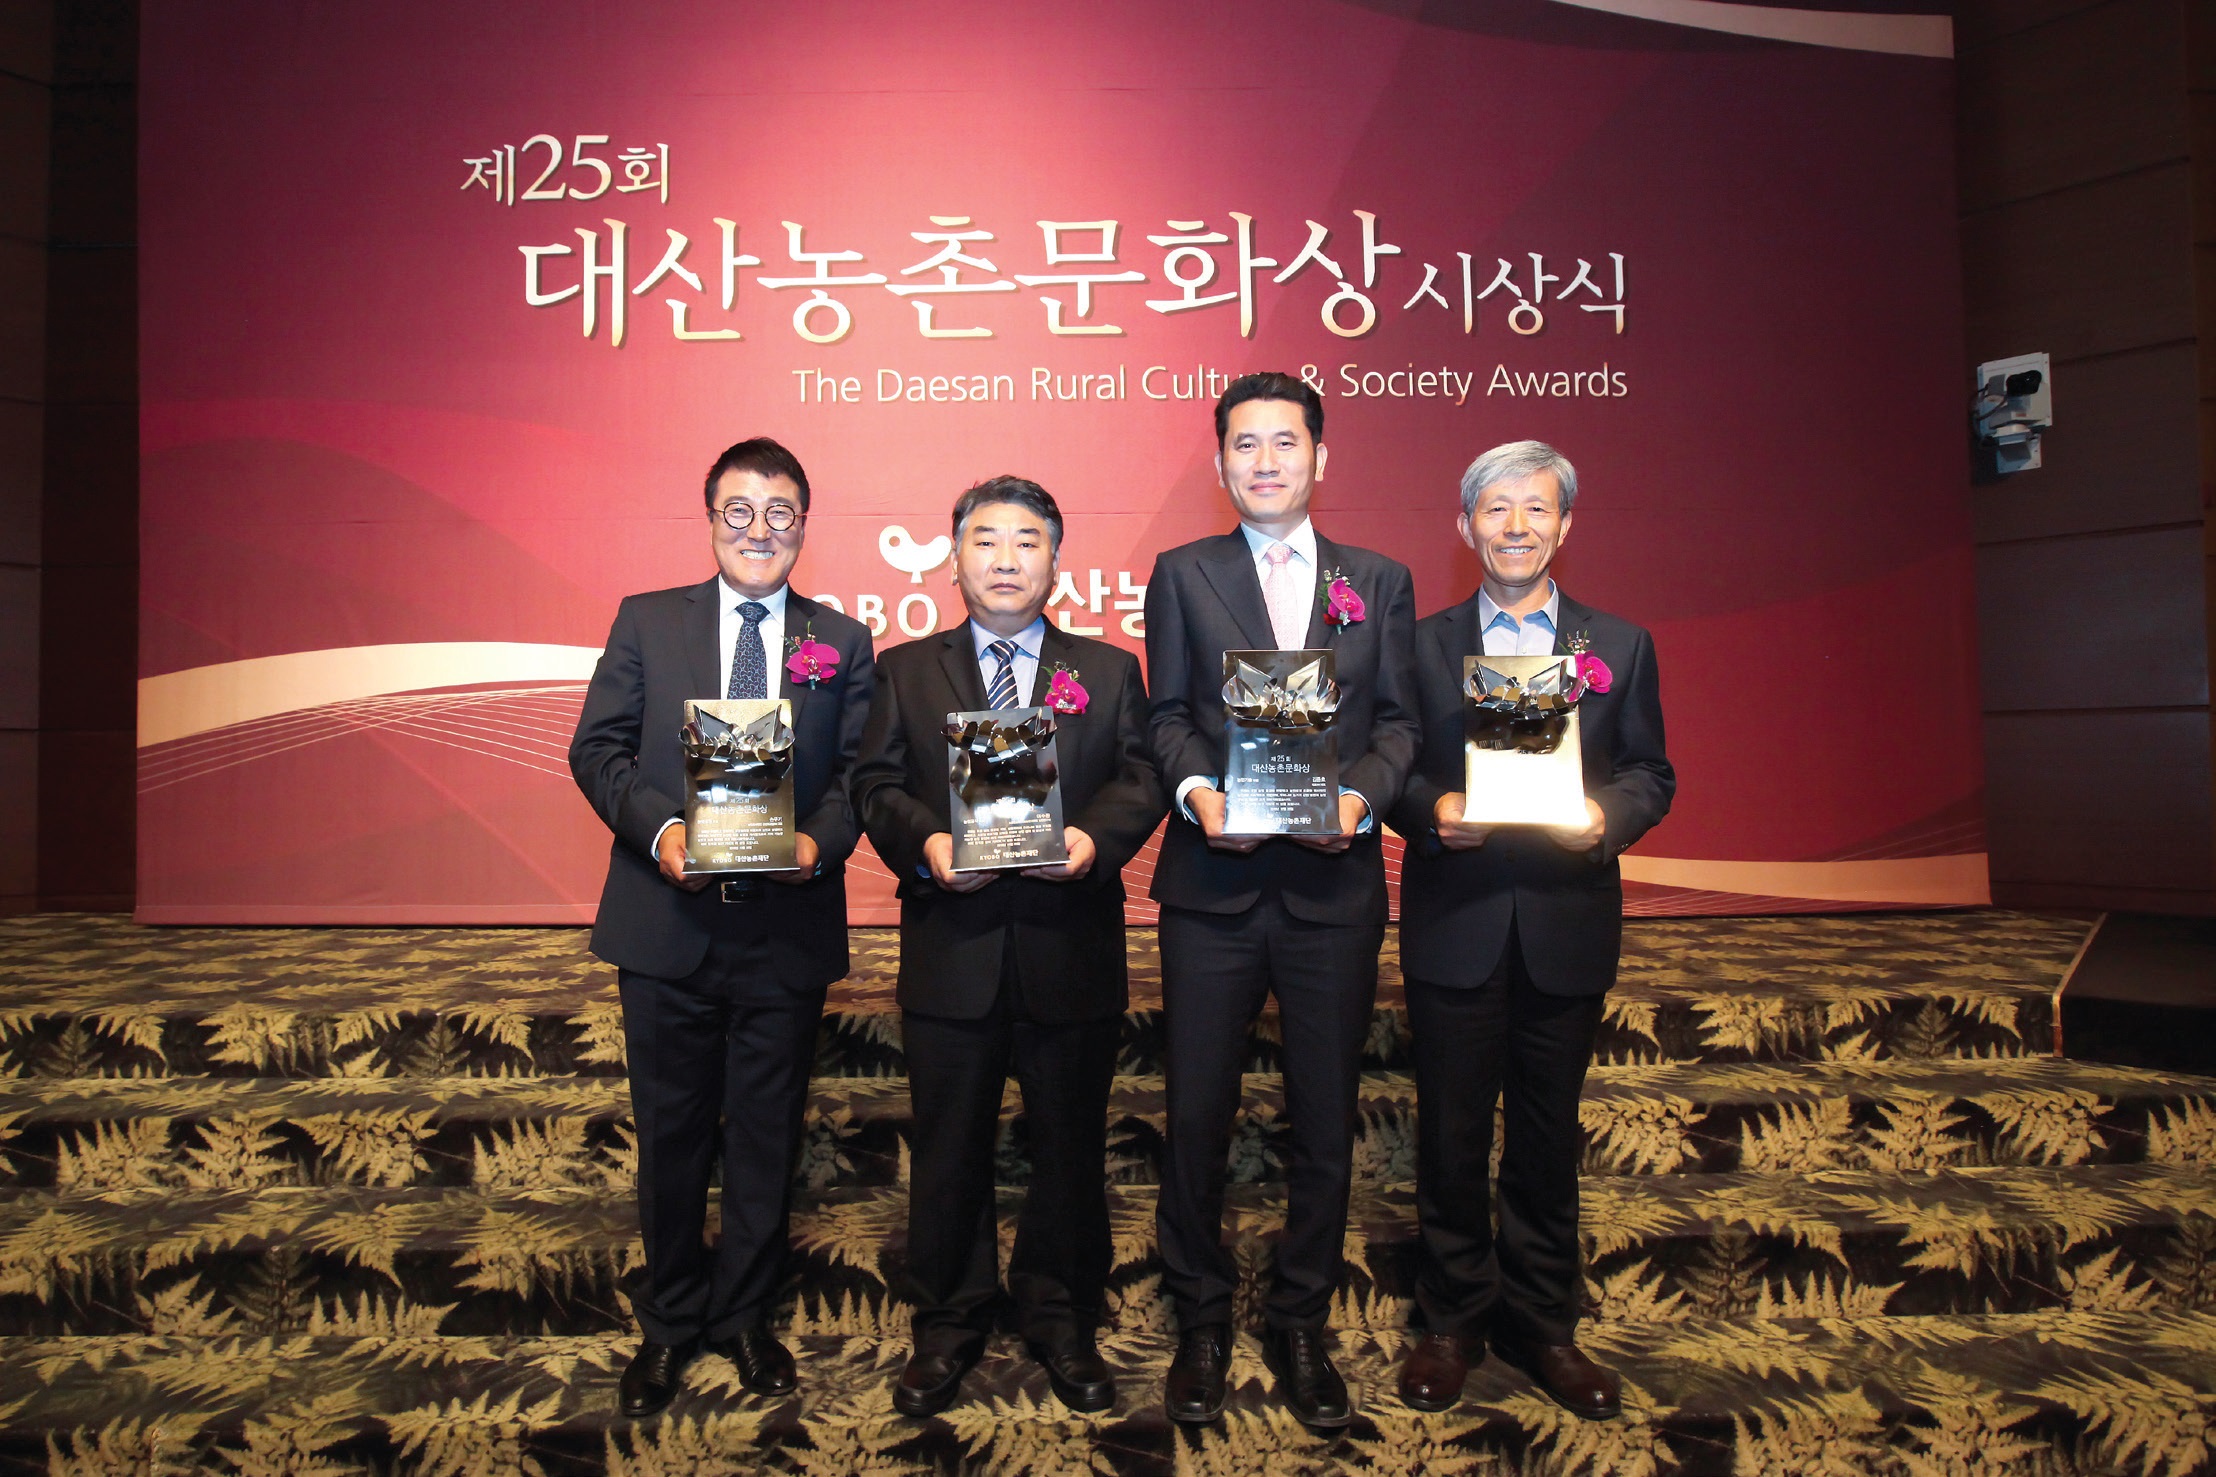 제25회 대산농촌문화상 수상자. 왼쪽부터 손우기, 여수환, 김중호, 김준권 수상자이다.